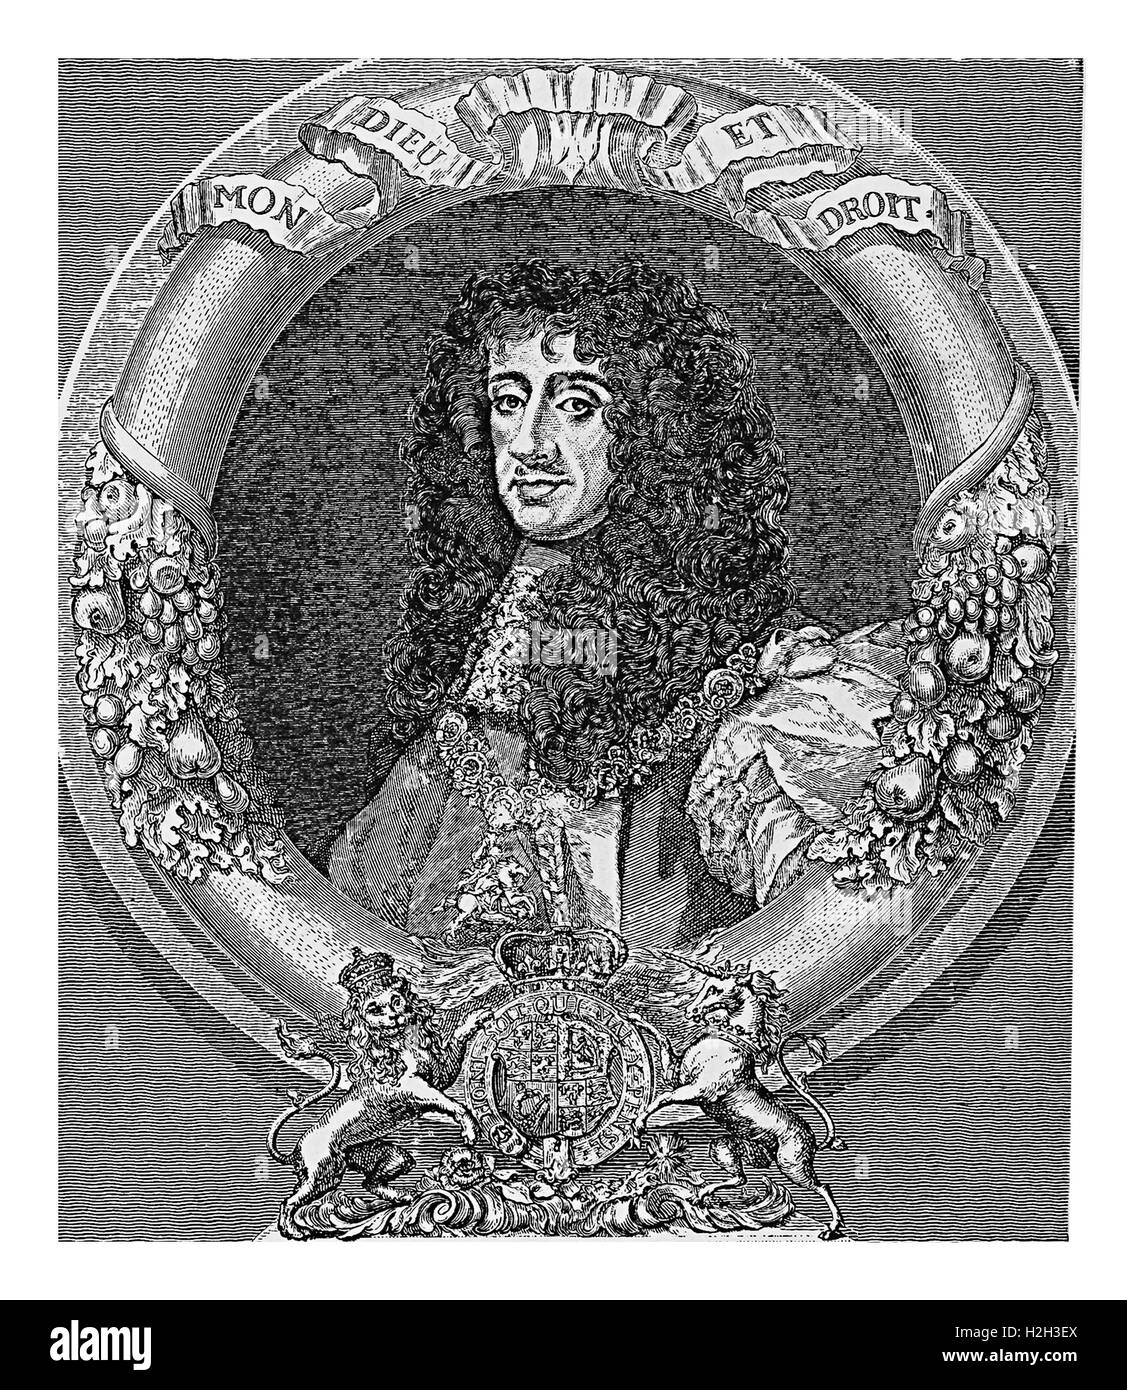 Porträt von Charles II König von England, Schottland und Irland, Wiederherstellung der Monarchie nach Cromwell Interregnum im Jahre 1660 Gravur Stockfoto